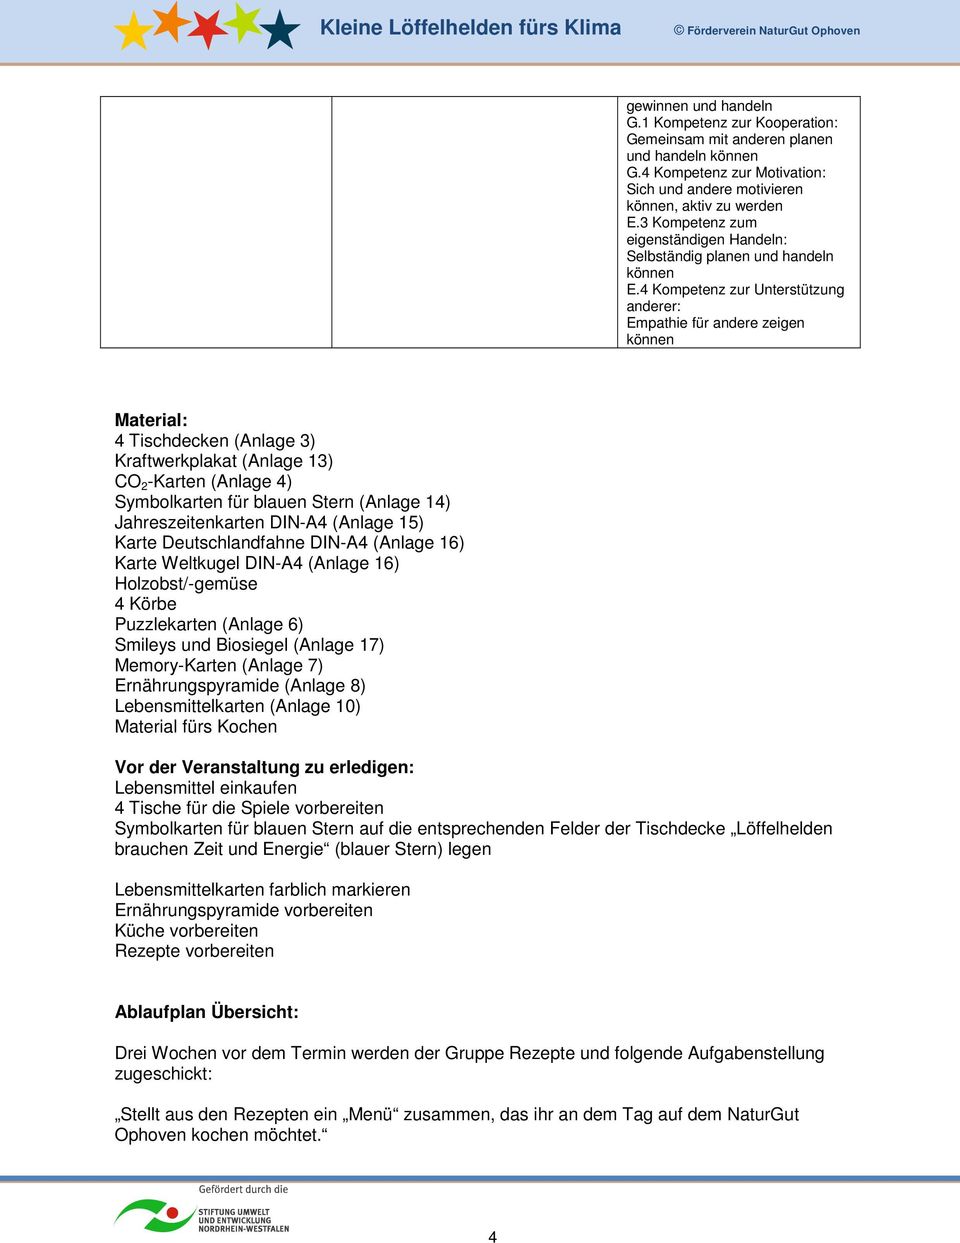 Jahreszeitenkarten DIN-A4 (Anlage 15) Karte Deutschlandfahne DIN-A4 (Anlage 16) Karte Weltkugel DIN-A4 (Anlage 16) Holzobst/-gemüse 4 Körbe Puzzlekarten (Anlage 6) Smileys und Biosiegel (Anlage 17)